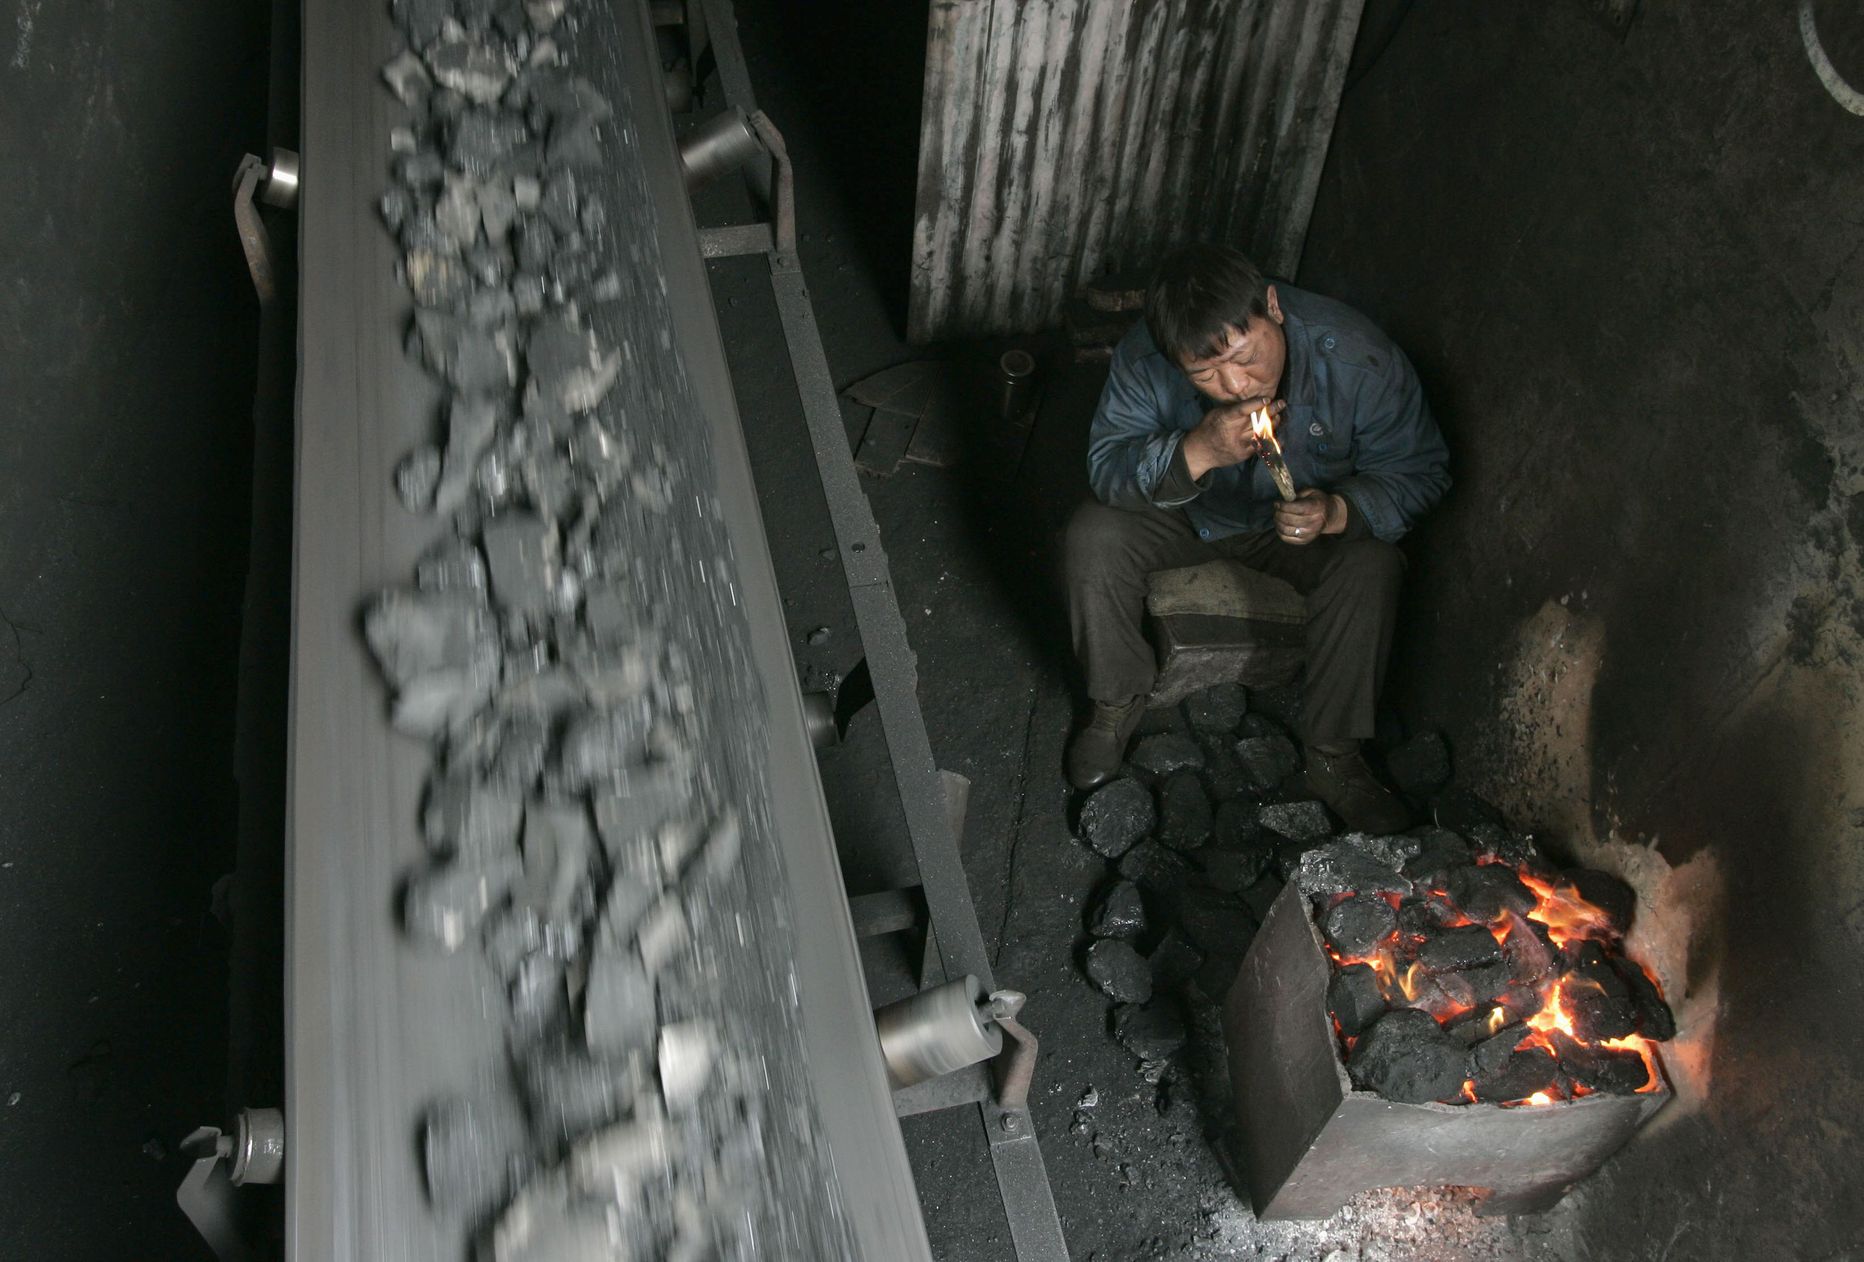 Hiina tööline süütamas sigaretti ühes söekaevanduse töökojas.